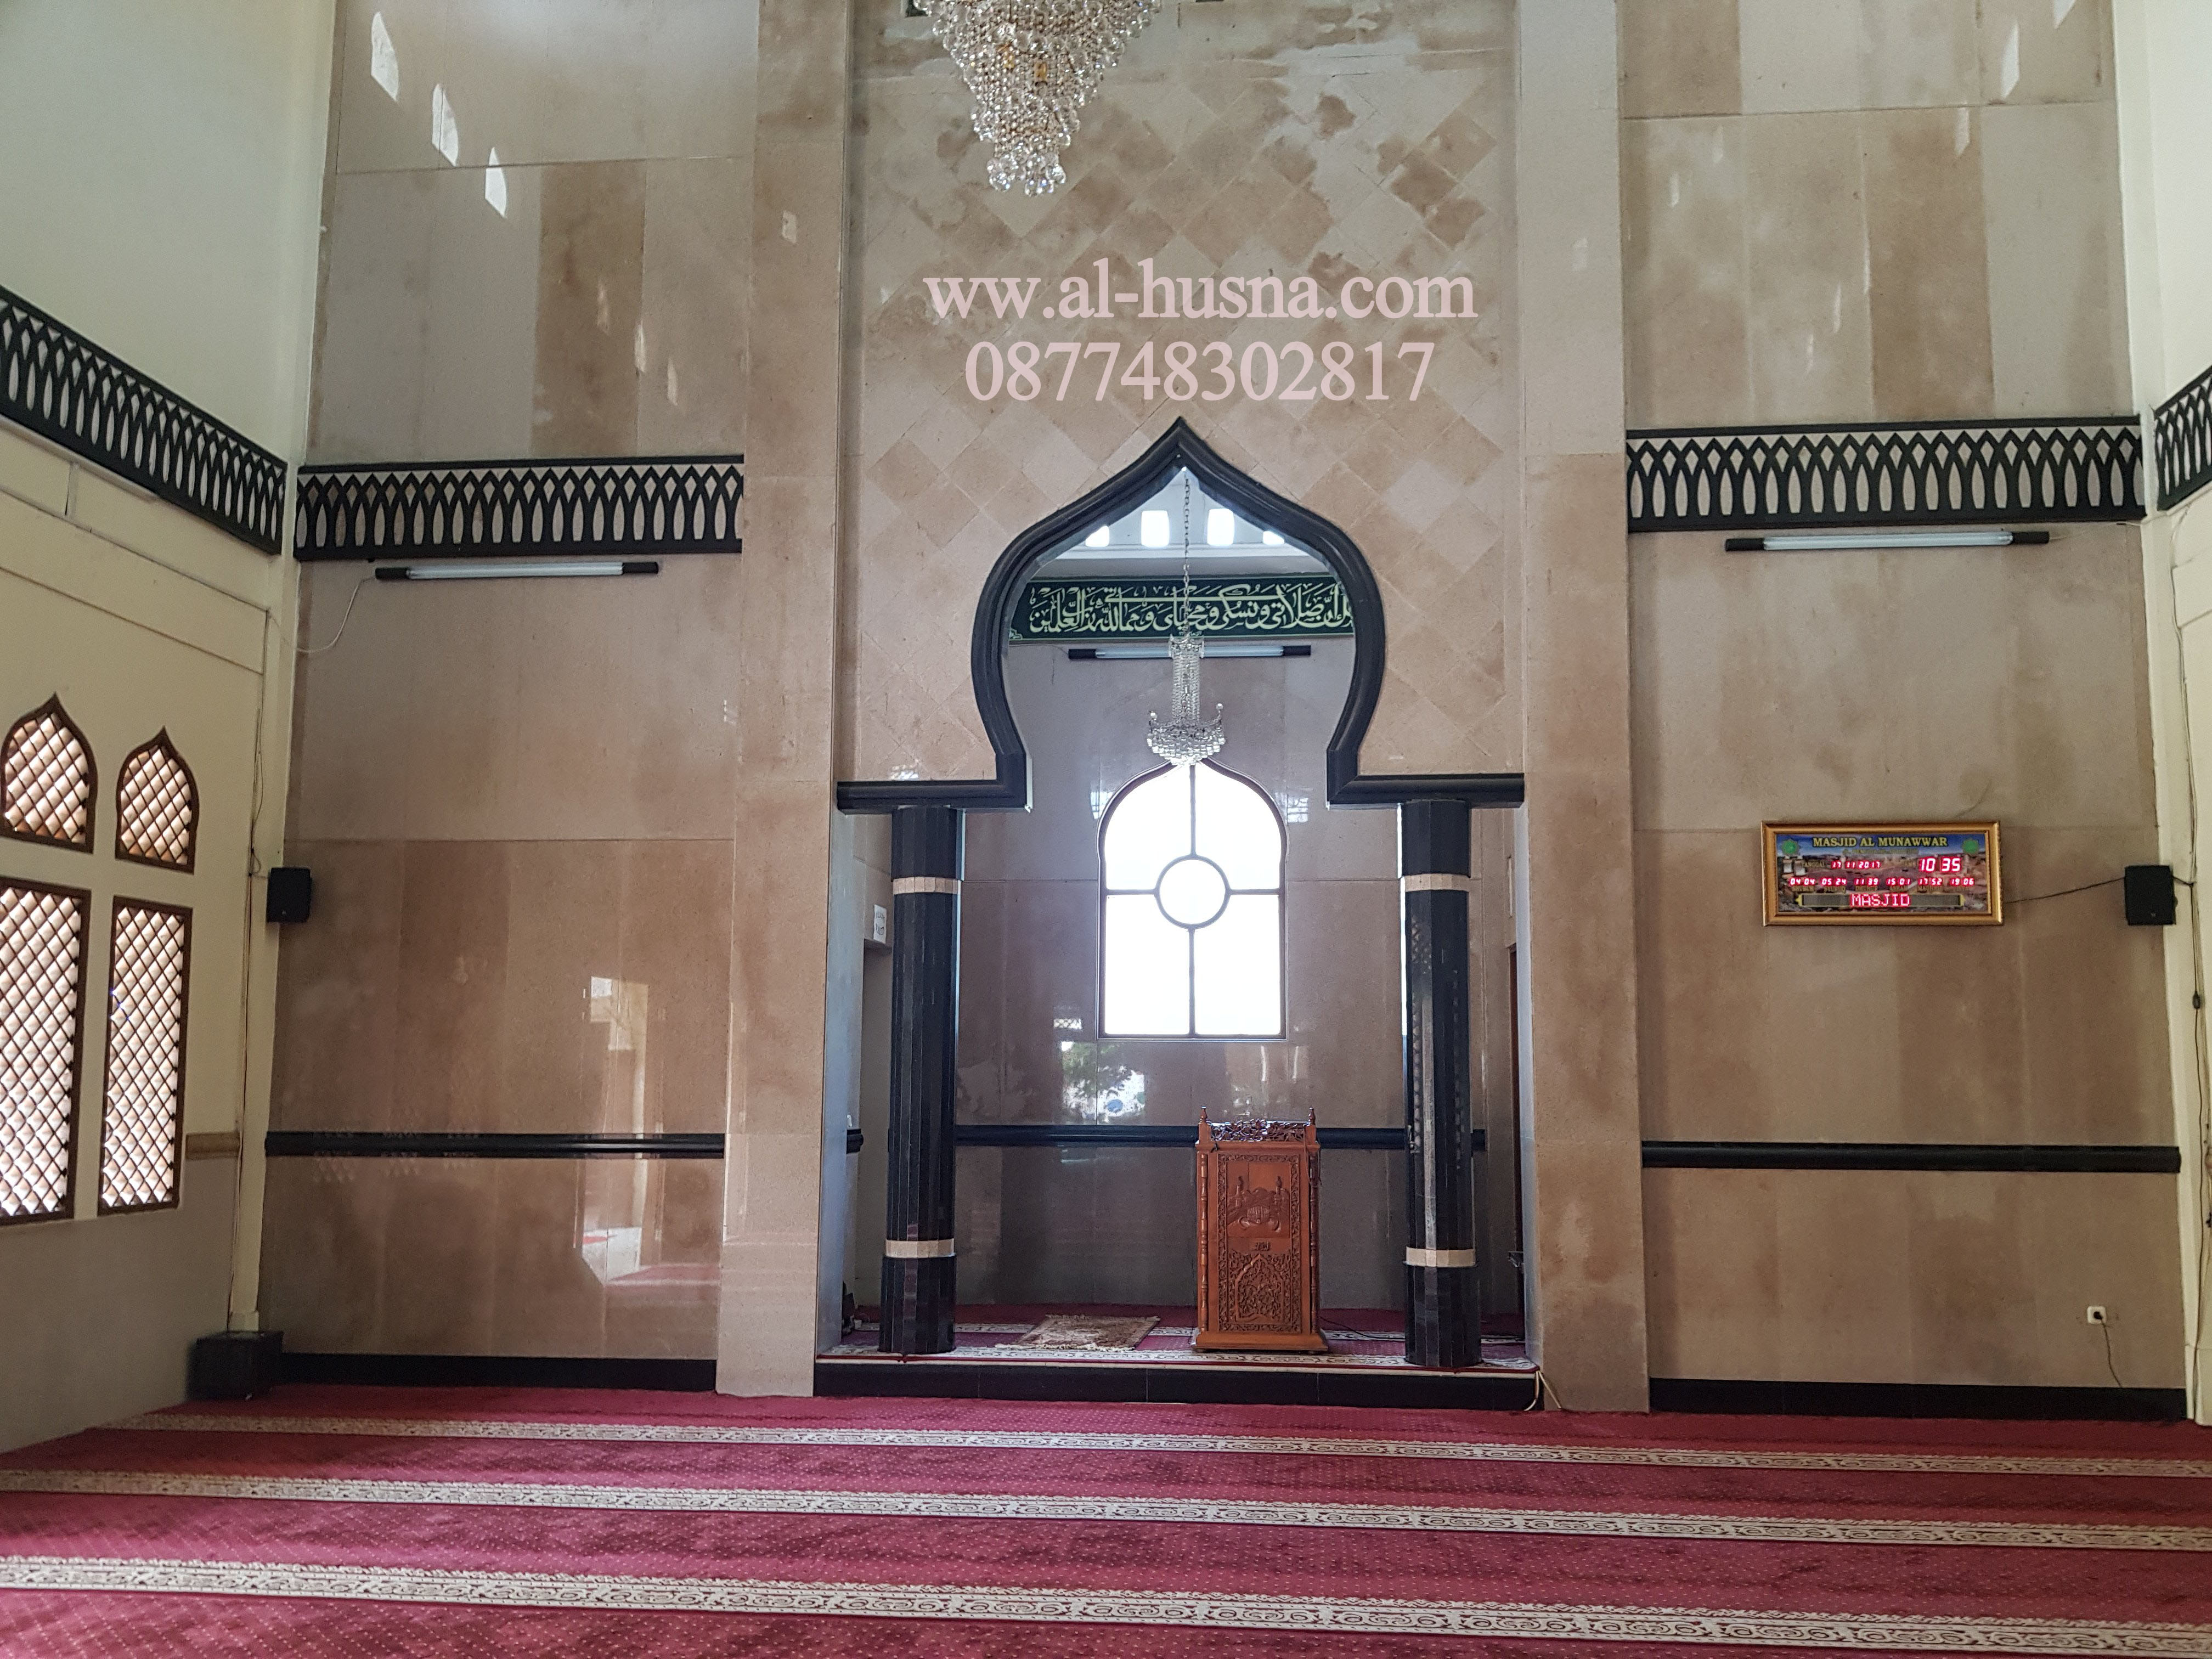 Jual Karpet Masjid Roll di Buaran Jakarta